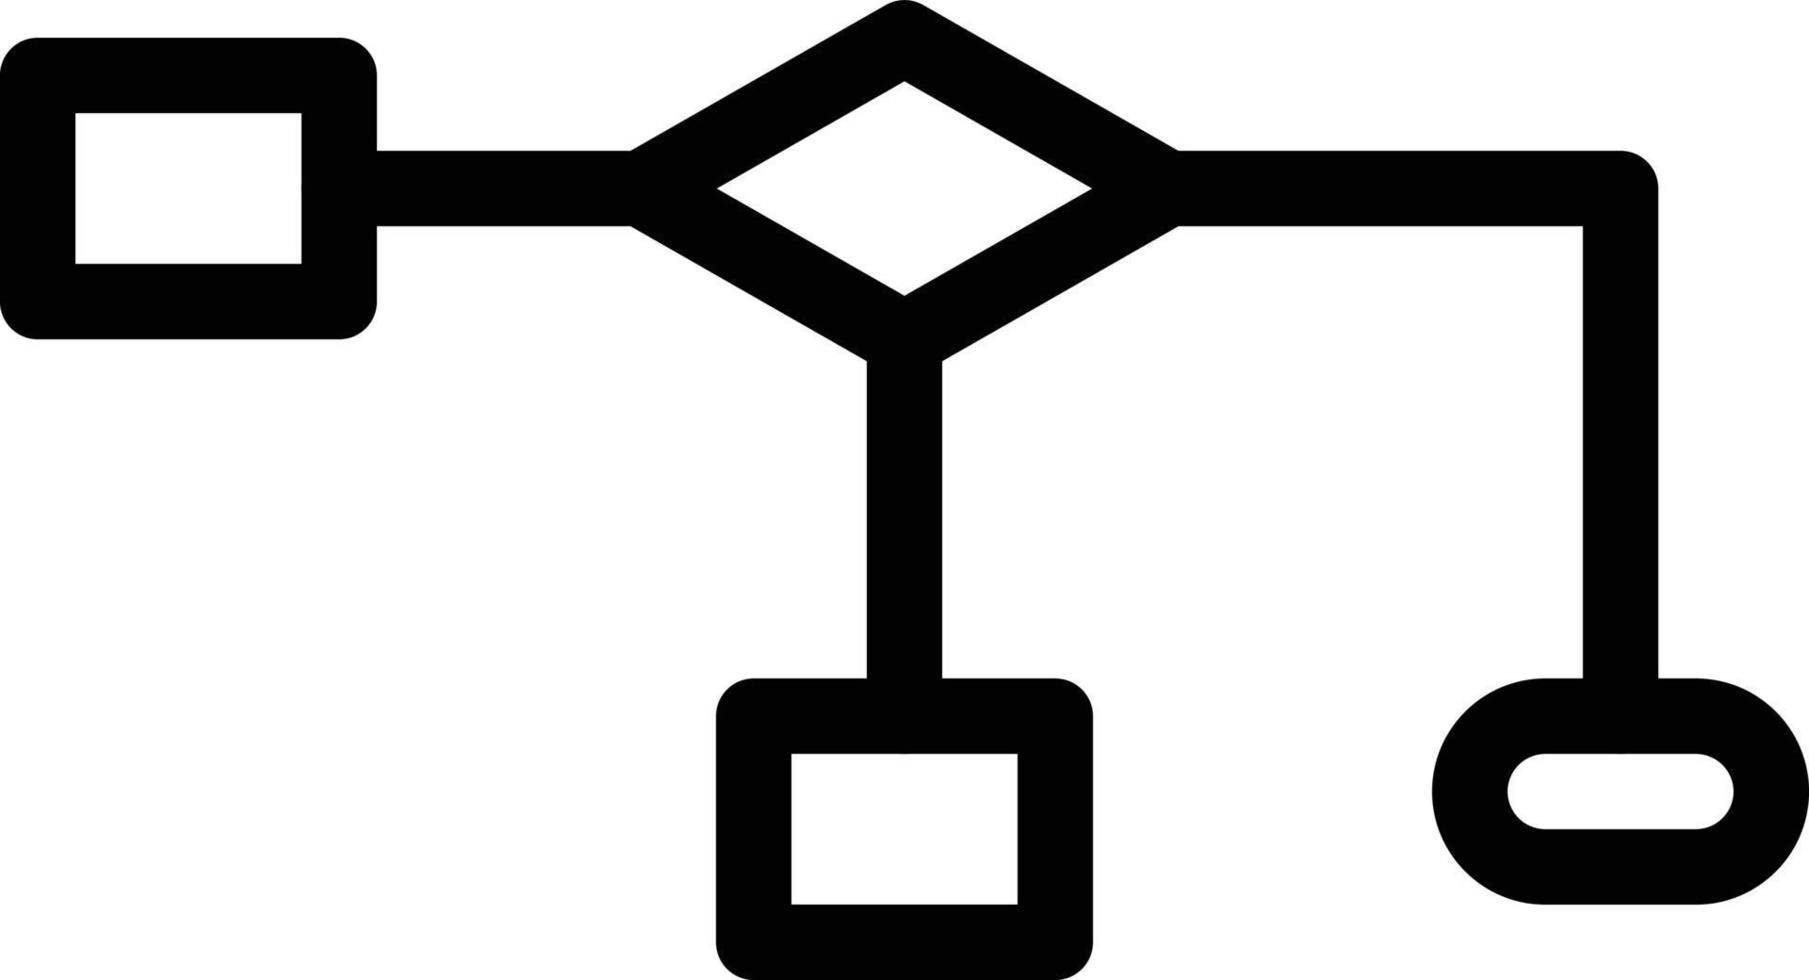 illustrazione vettoriale di connessione su uno sfondo. simboli di qualità premium. icone vettoriali per il concetto e la progettazione grafica.